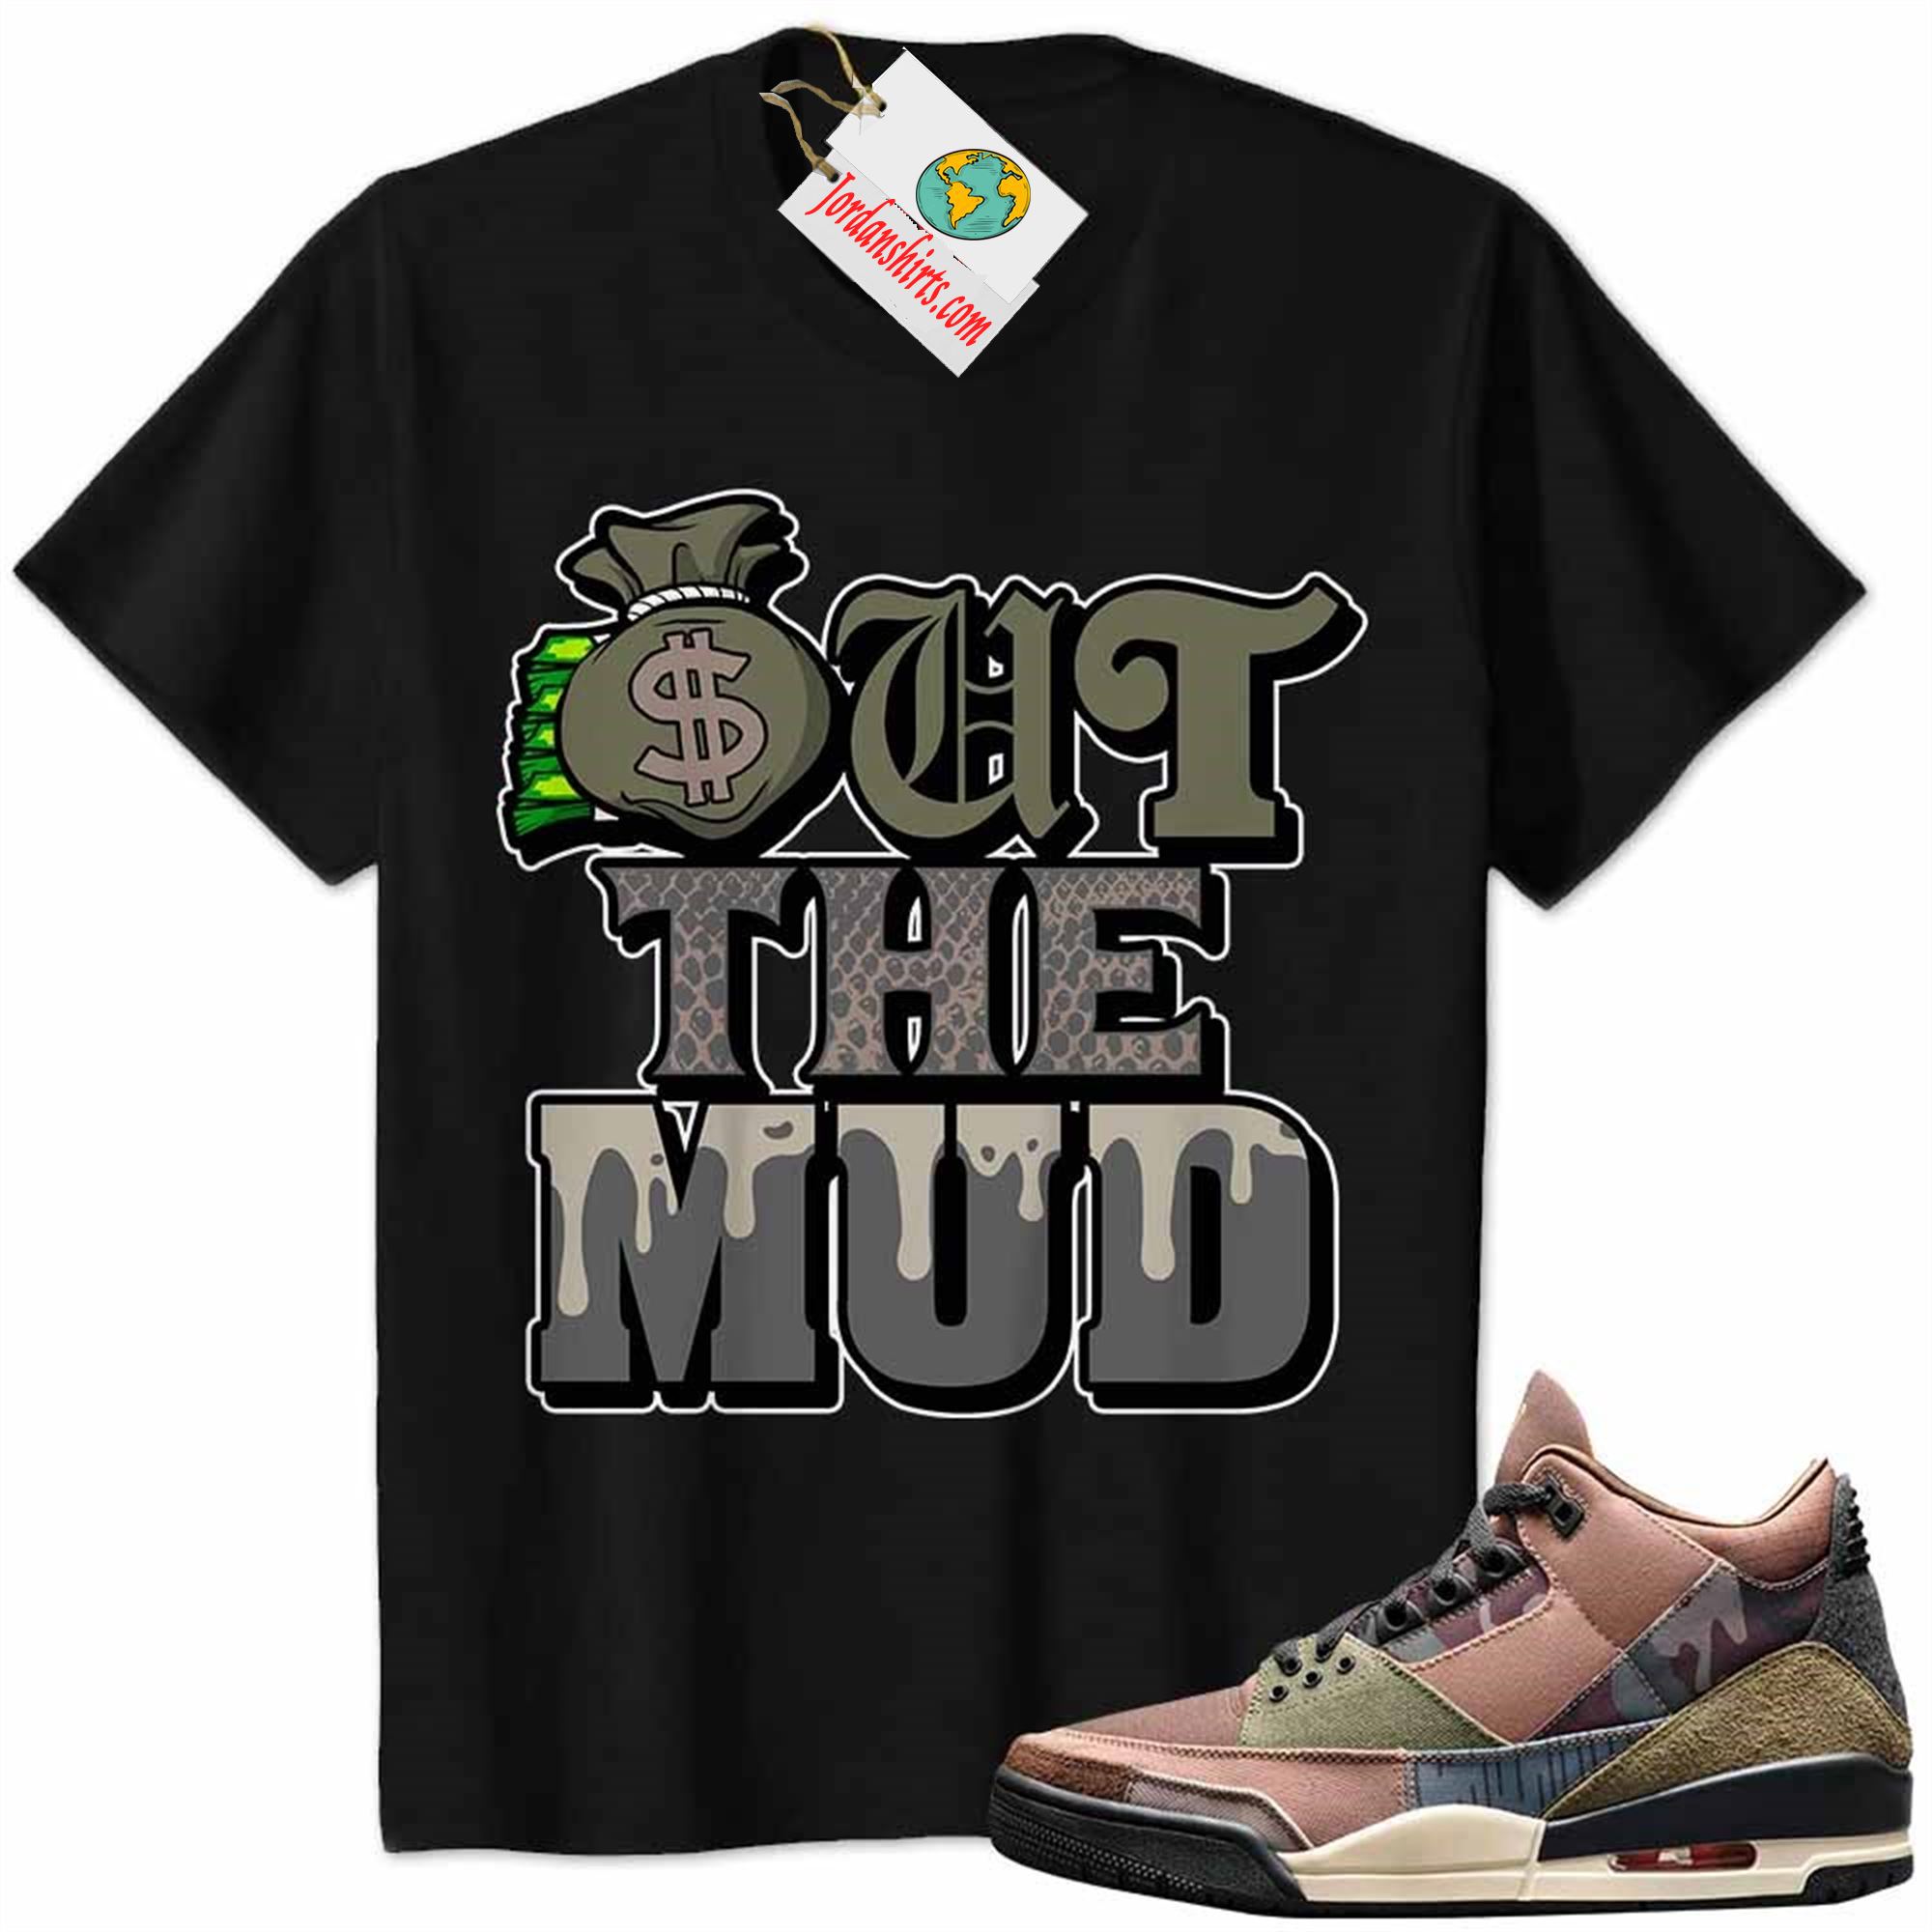 Jordan 3 Shirt, Jordan 3 Patchwork Shirt Out The Mud Money Bag Black Size Up To 5xl